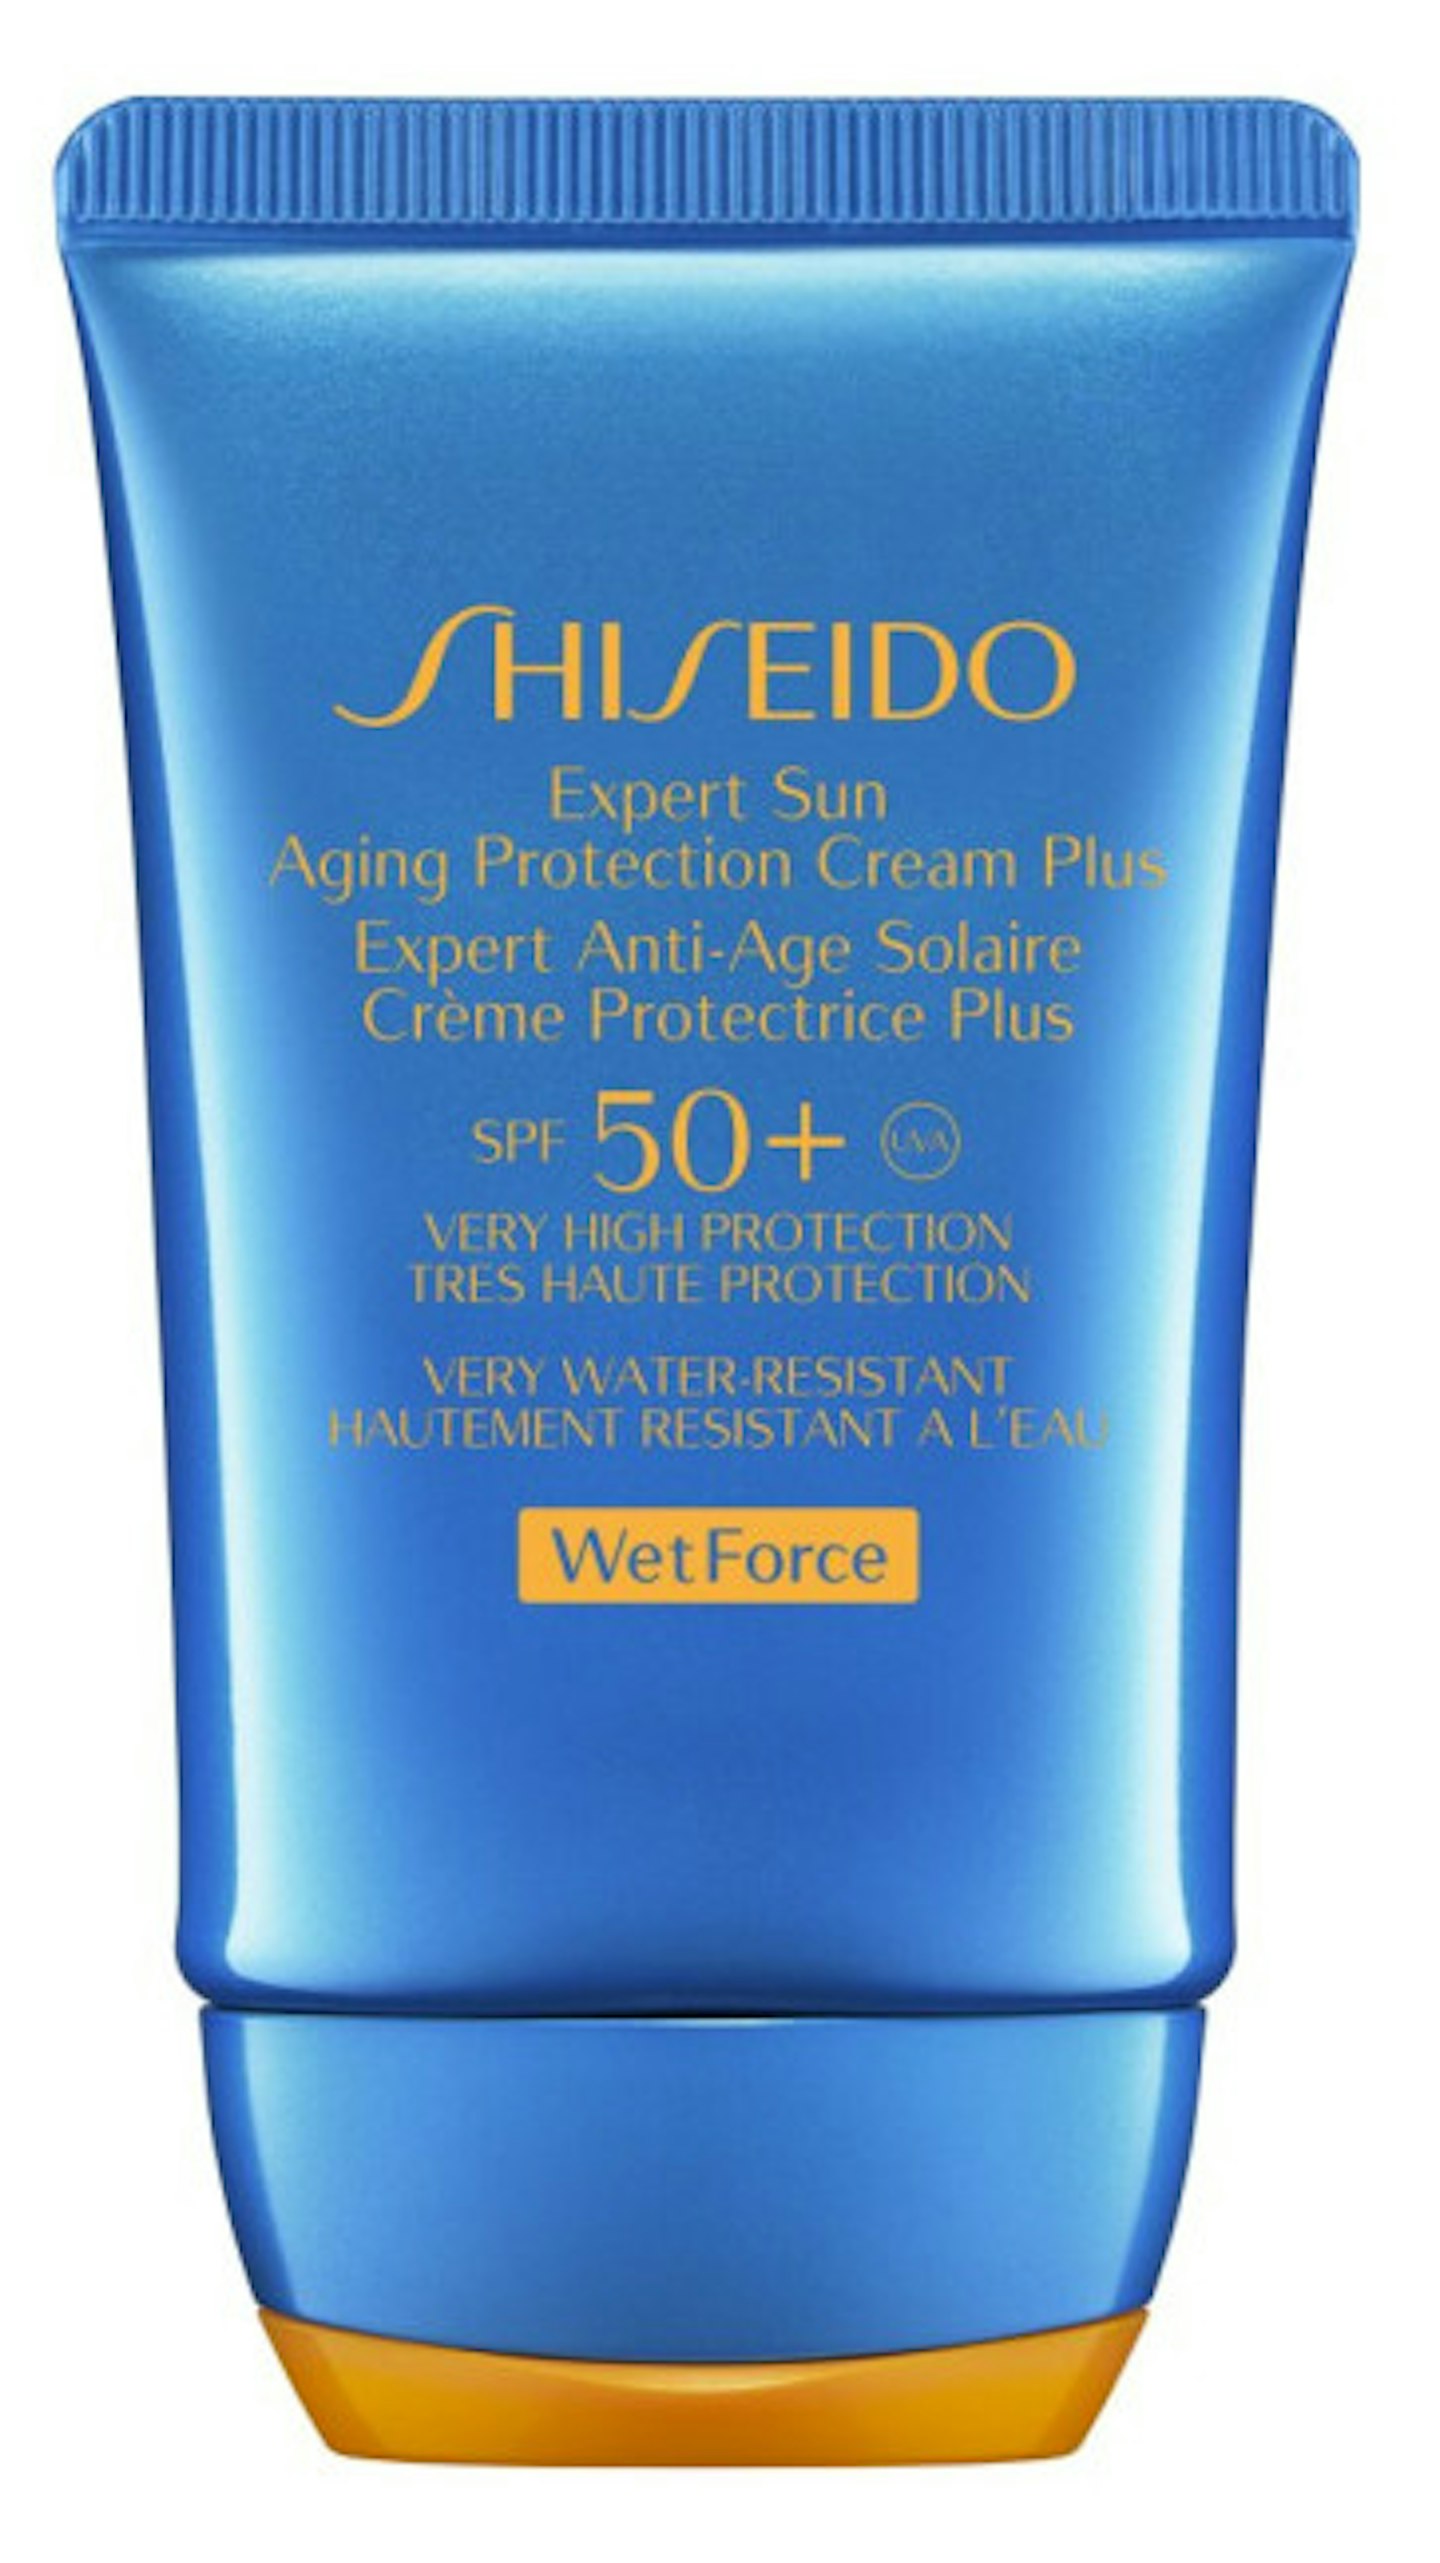 Aging Protection Cream Plus SPF 50 300DPI